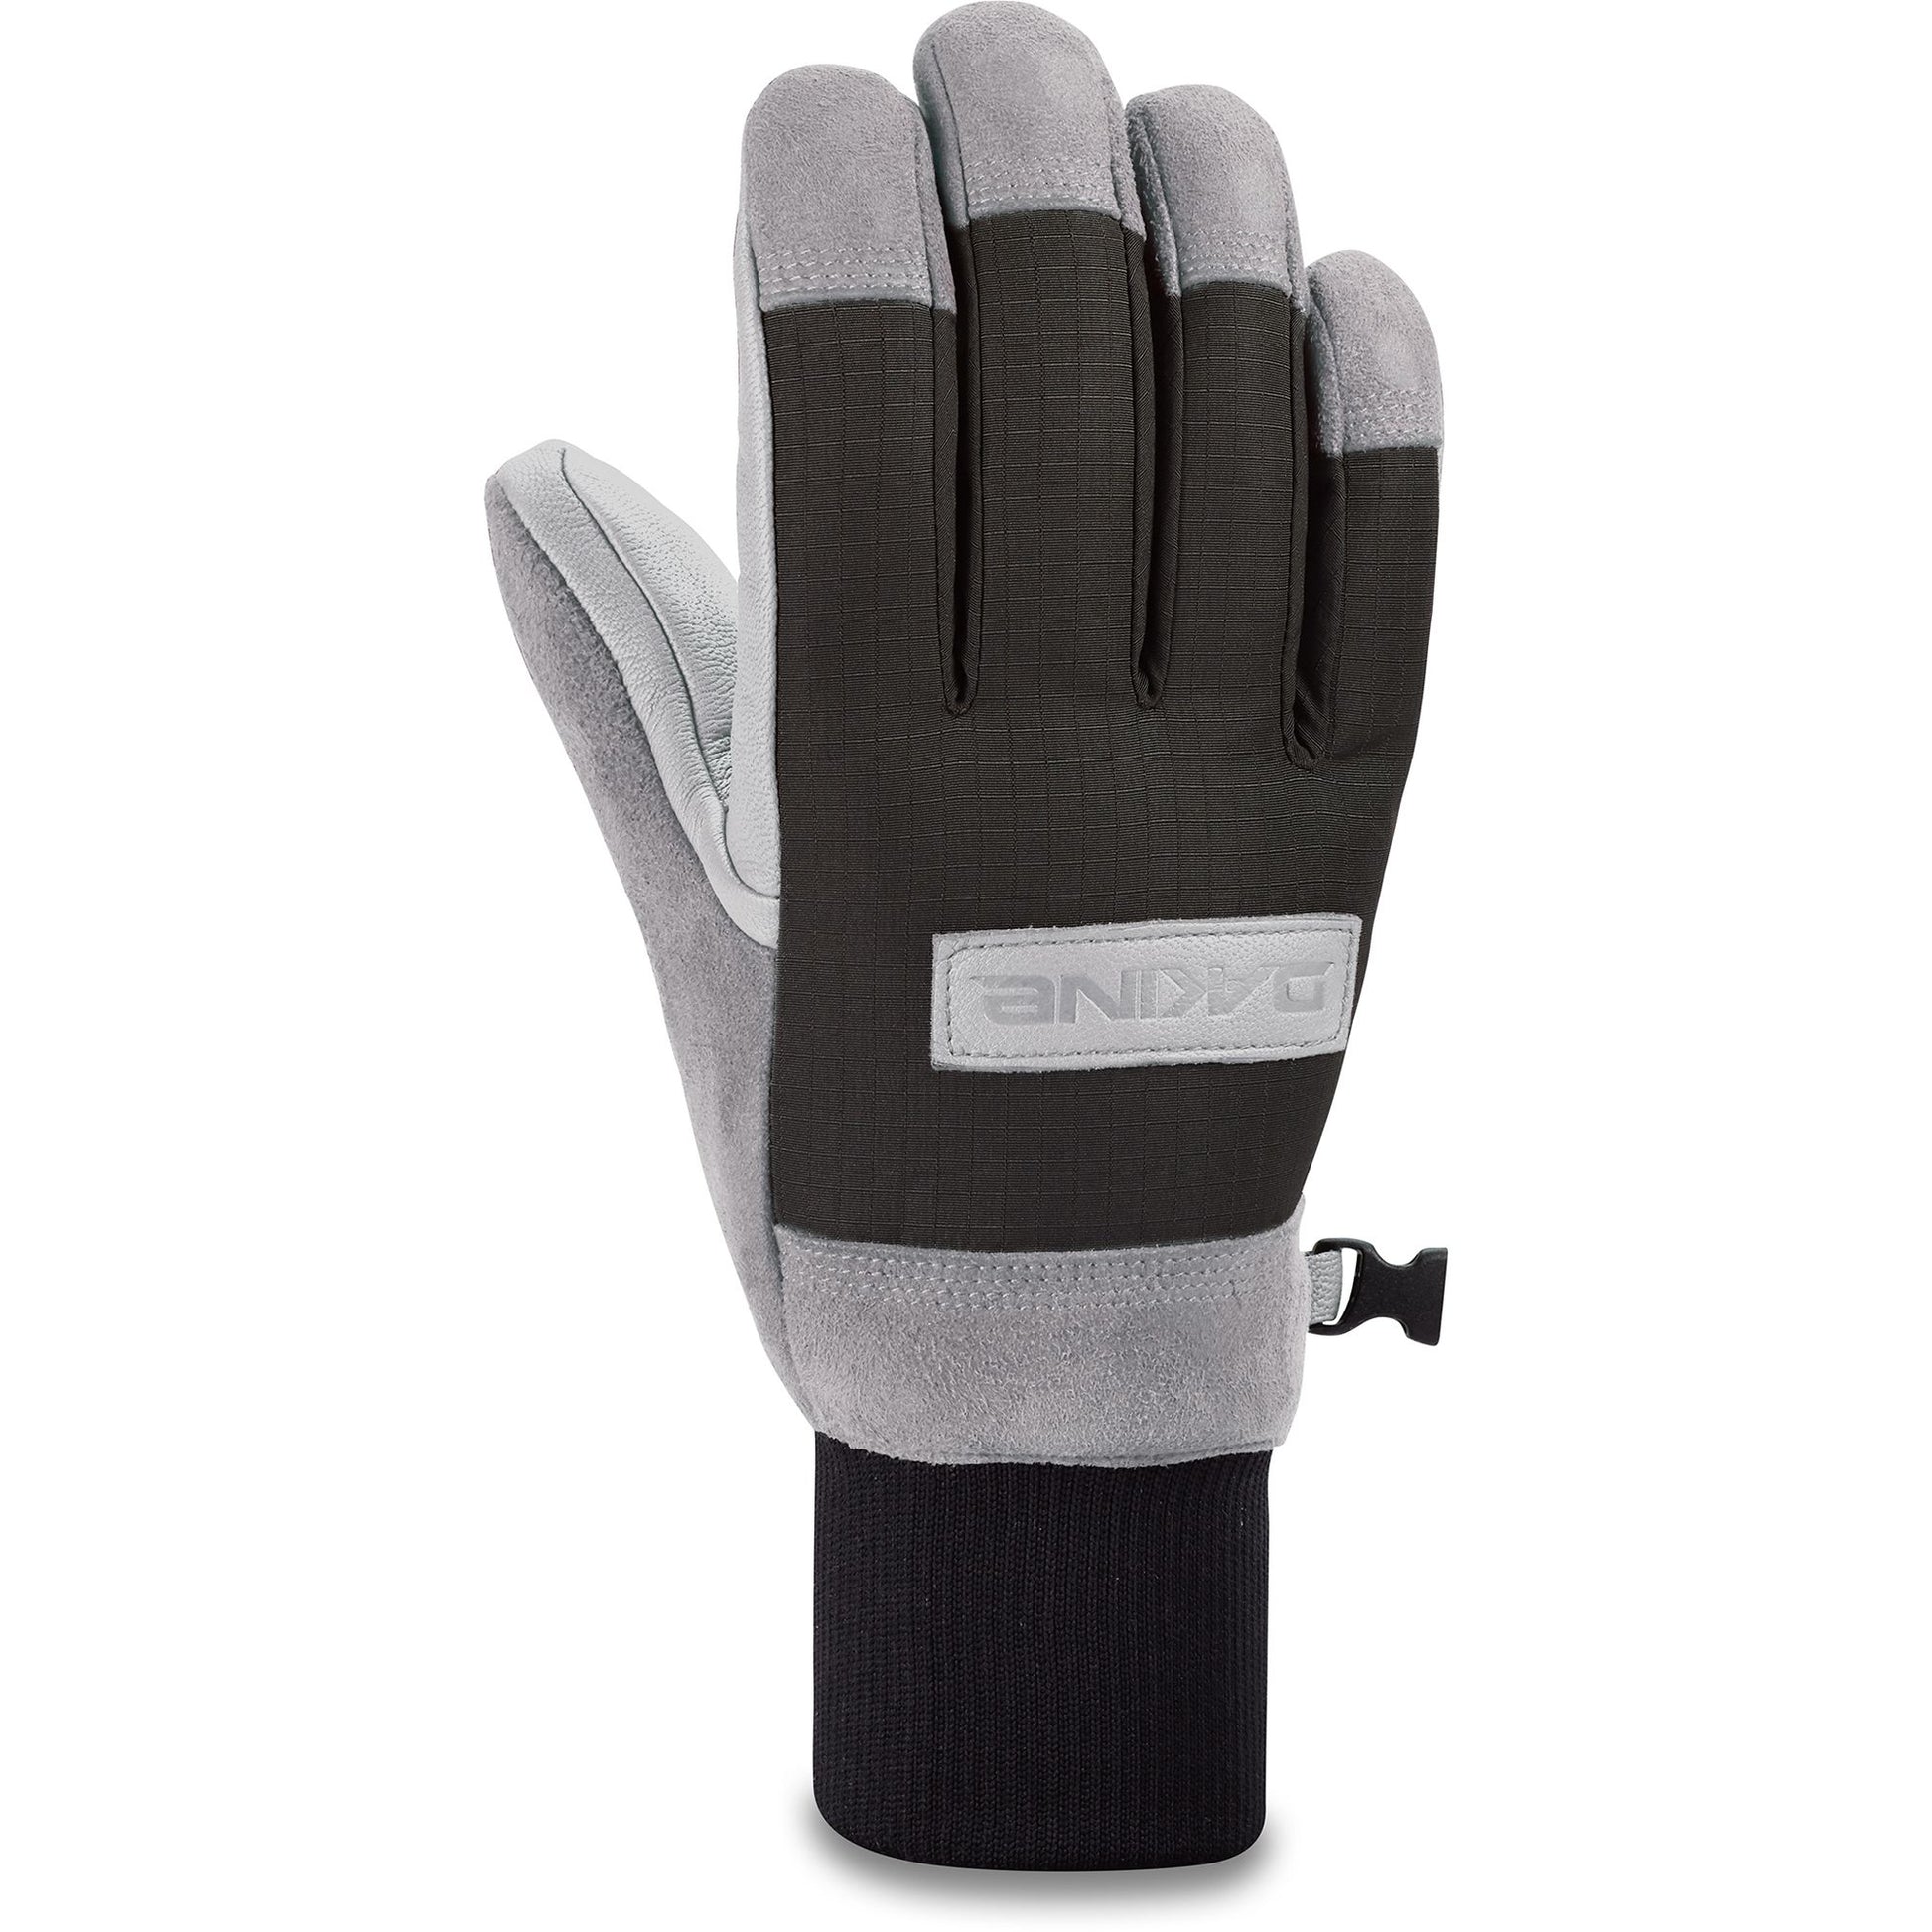 Dakine Pinto Glove Steel Grey - Dakine Snow Gloves